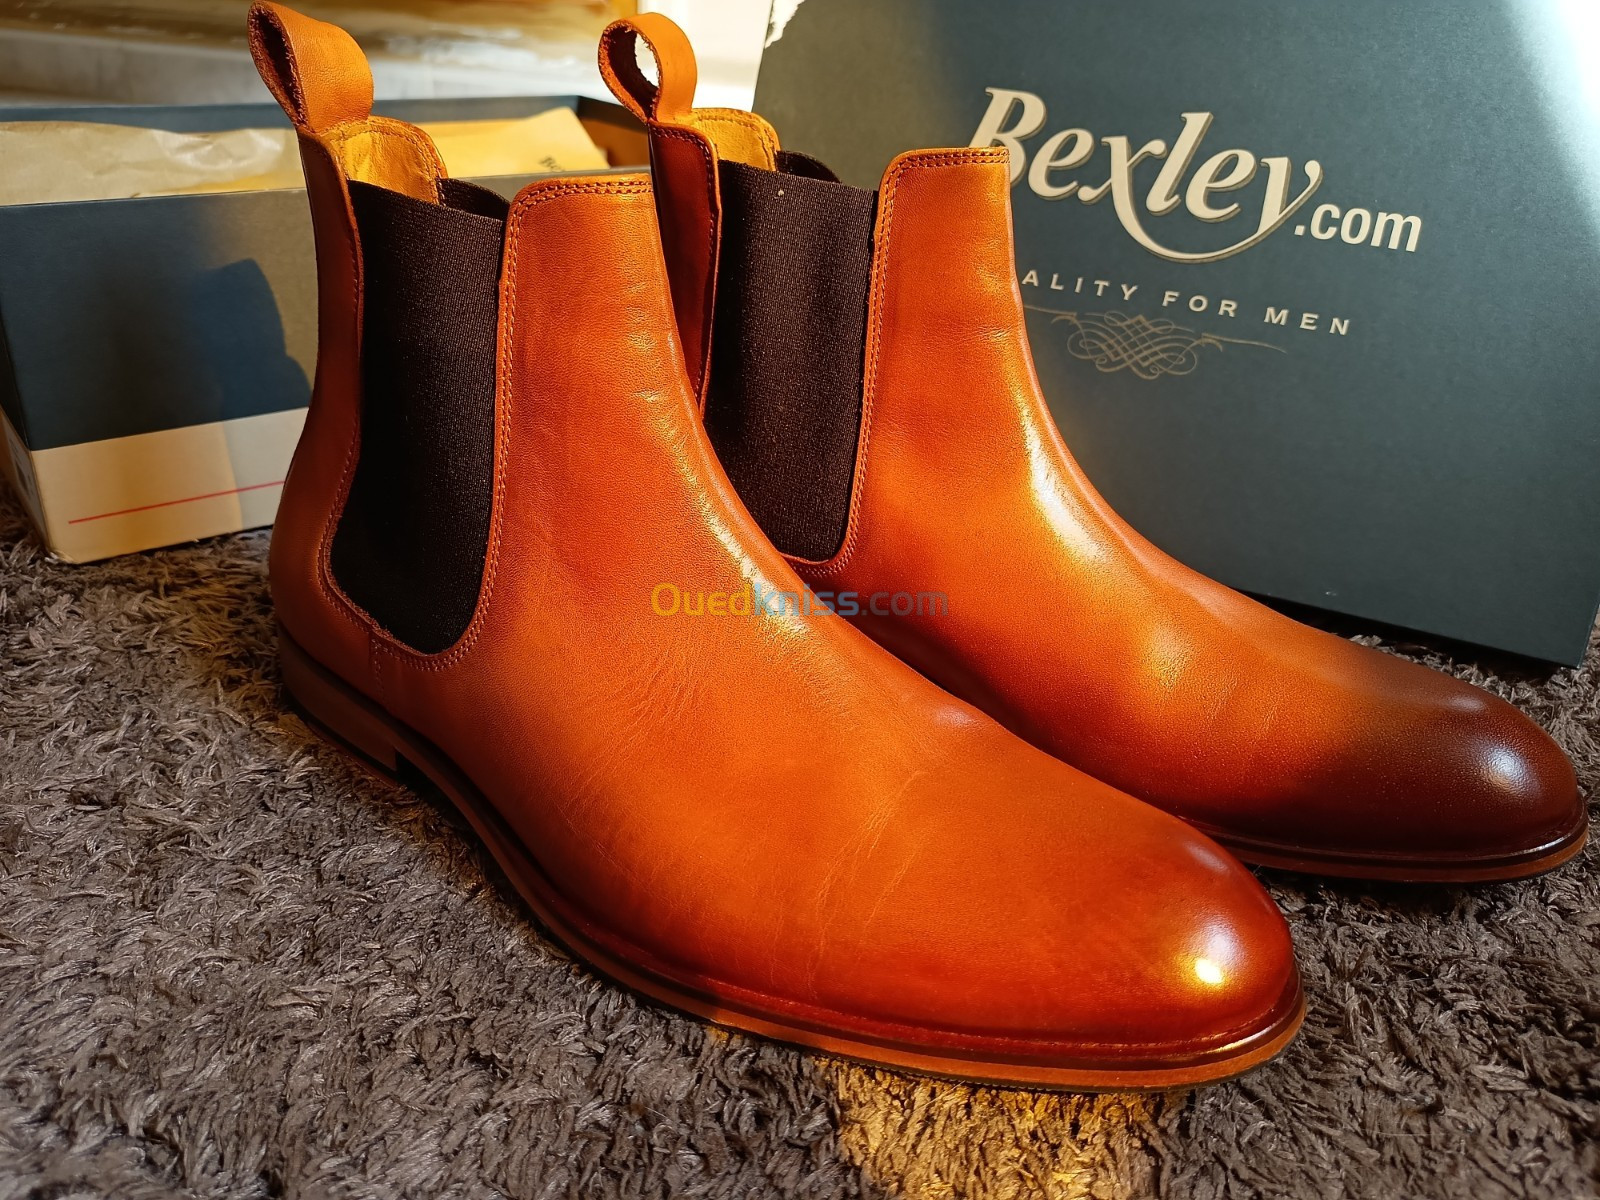 Chaussures en Cuir véritable Bexley confectionner à la main